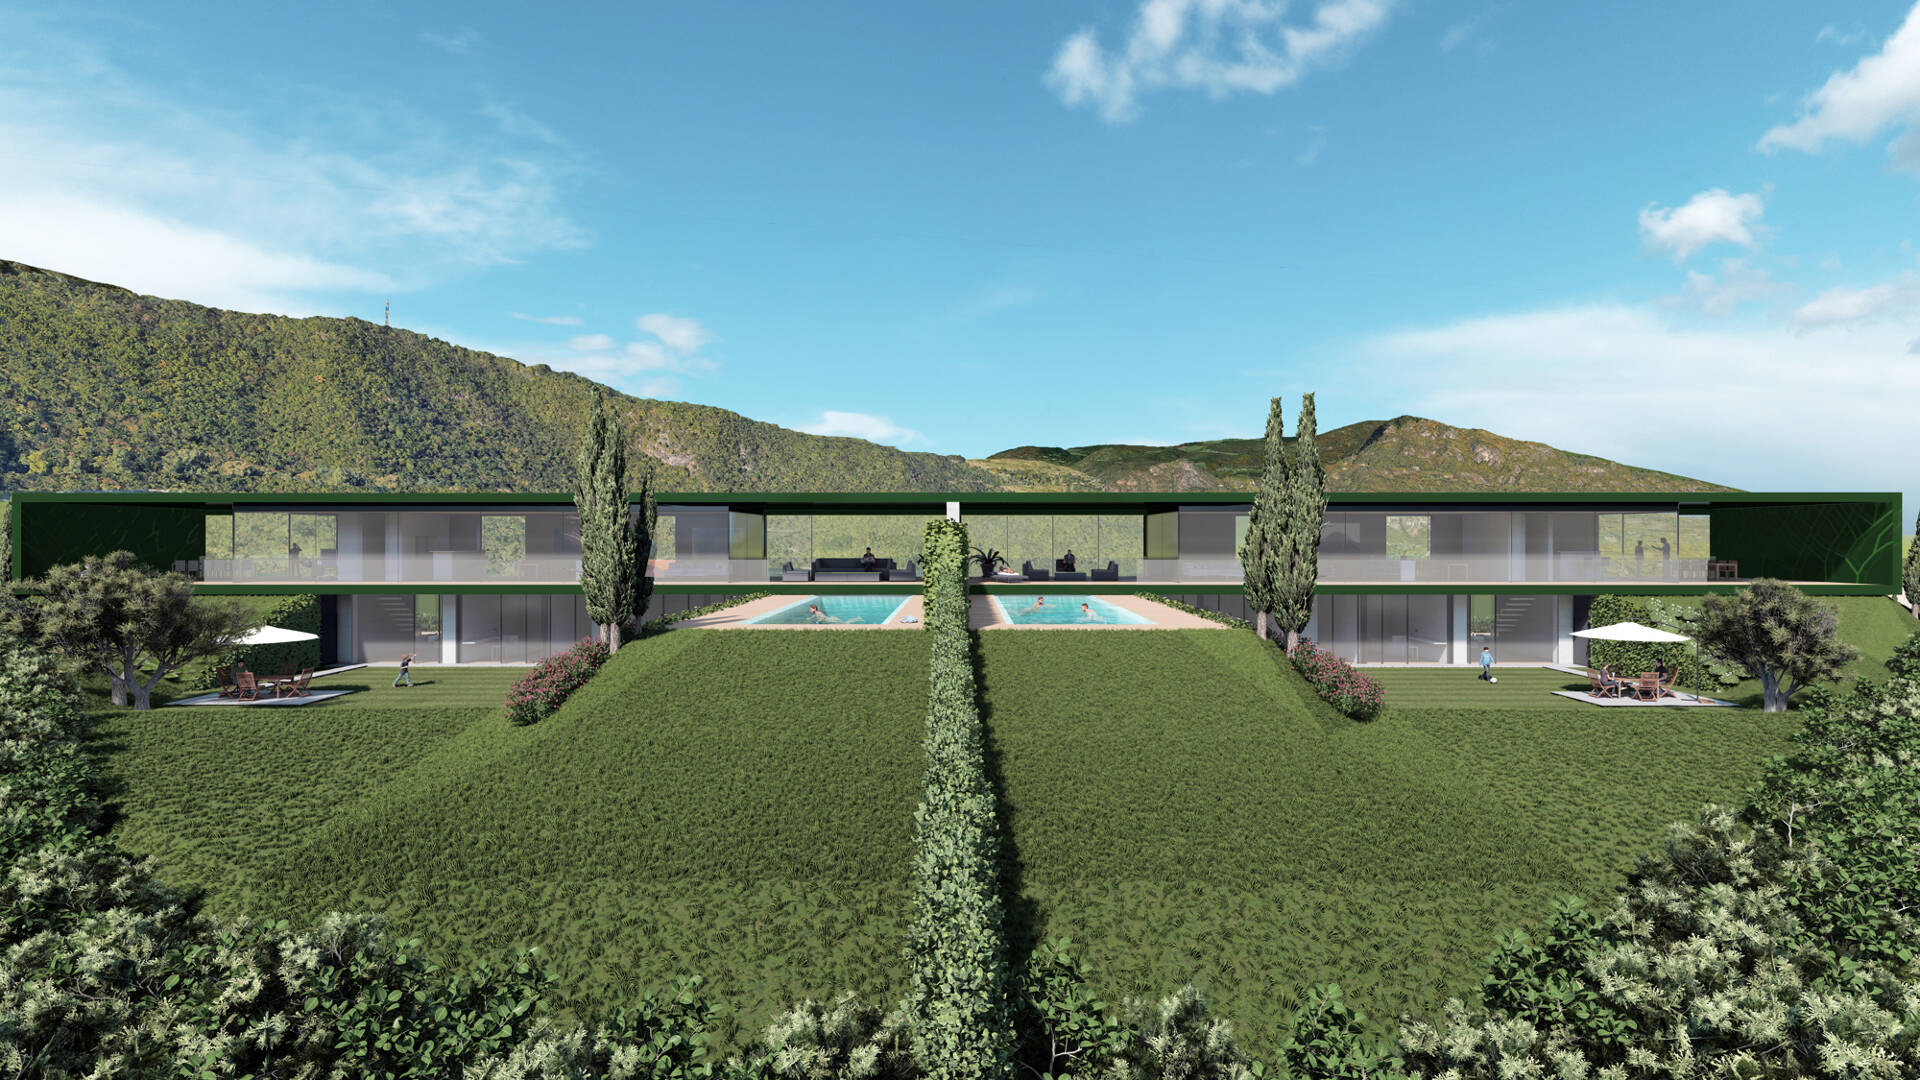 Baugrund mit genehmigtem Projekt für eine Villa in Bozen